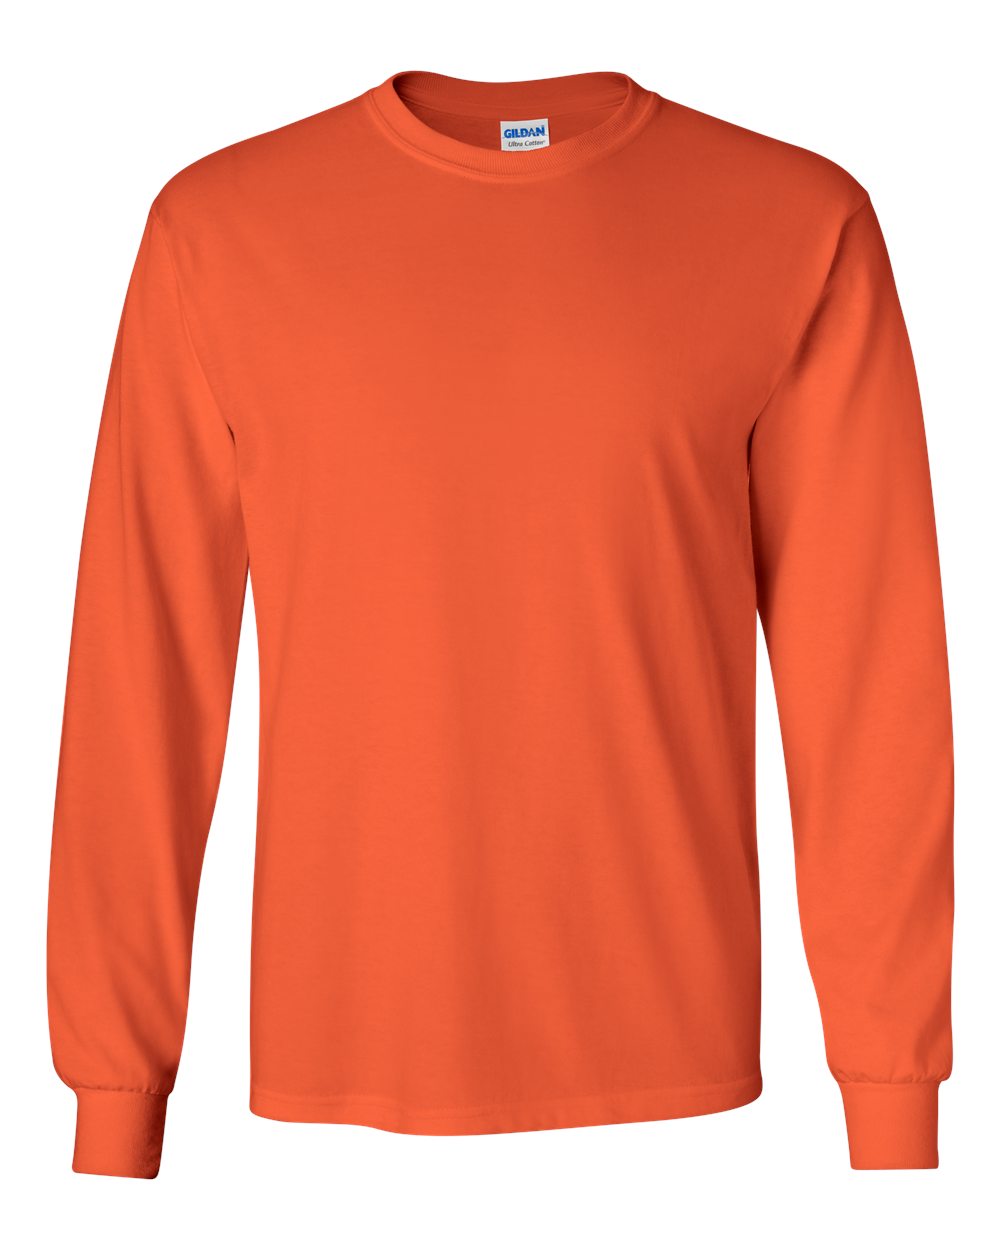 Gildan Long Sleeve (2400) in Orange